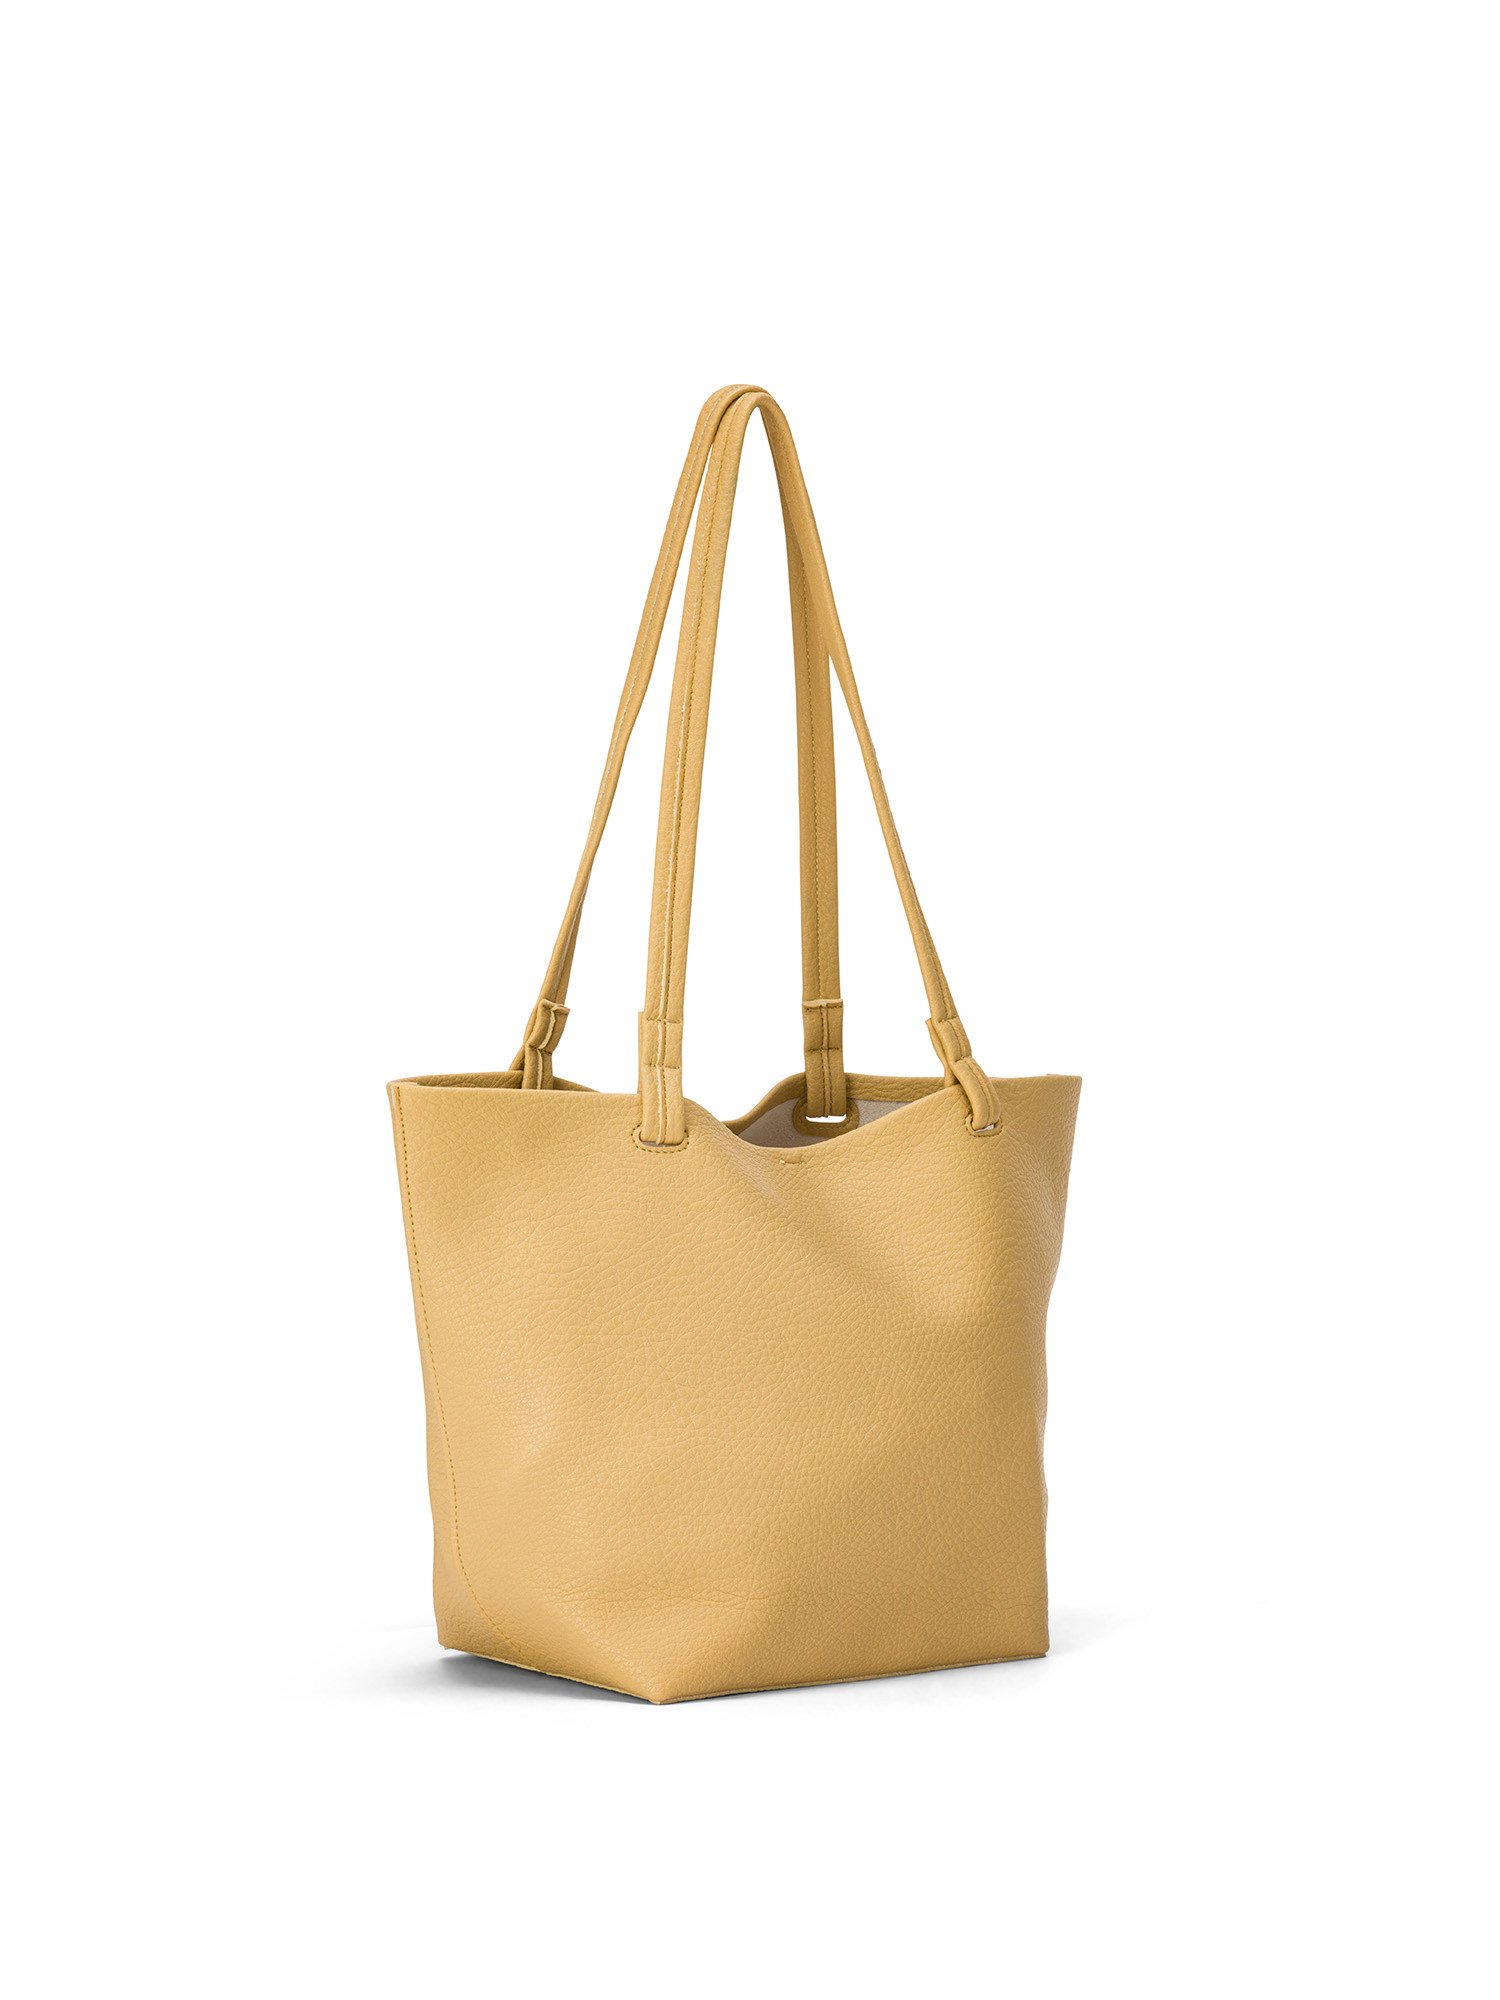 Koan - Shopping bag, Giallo, large image number 1